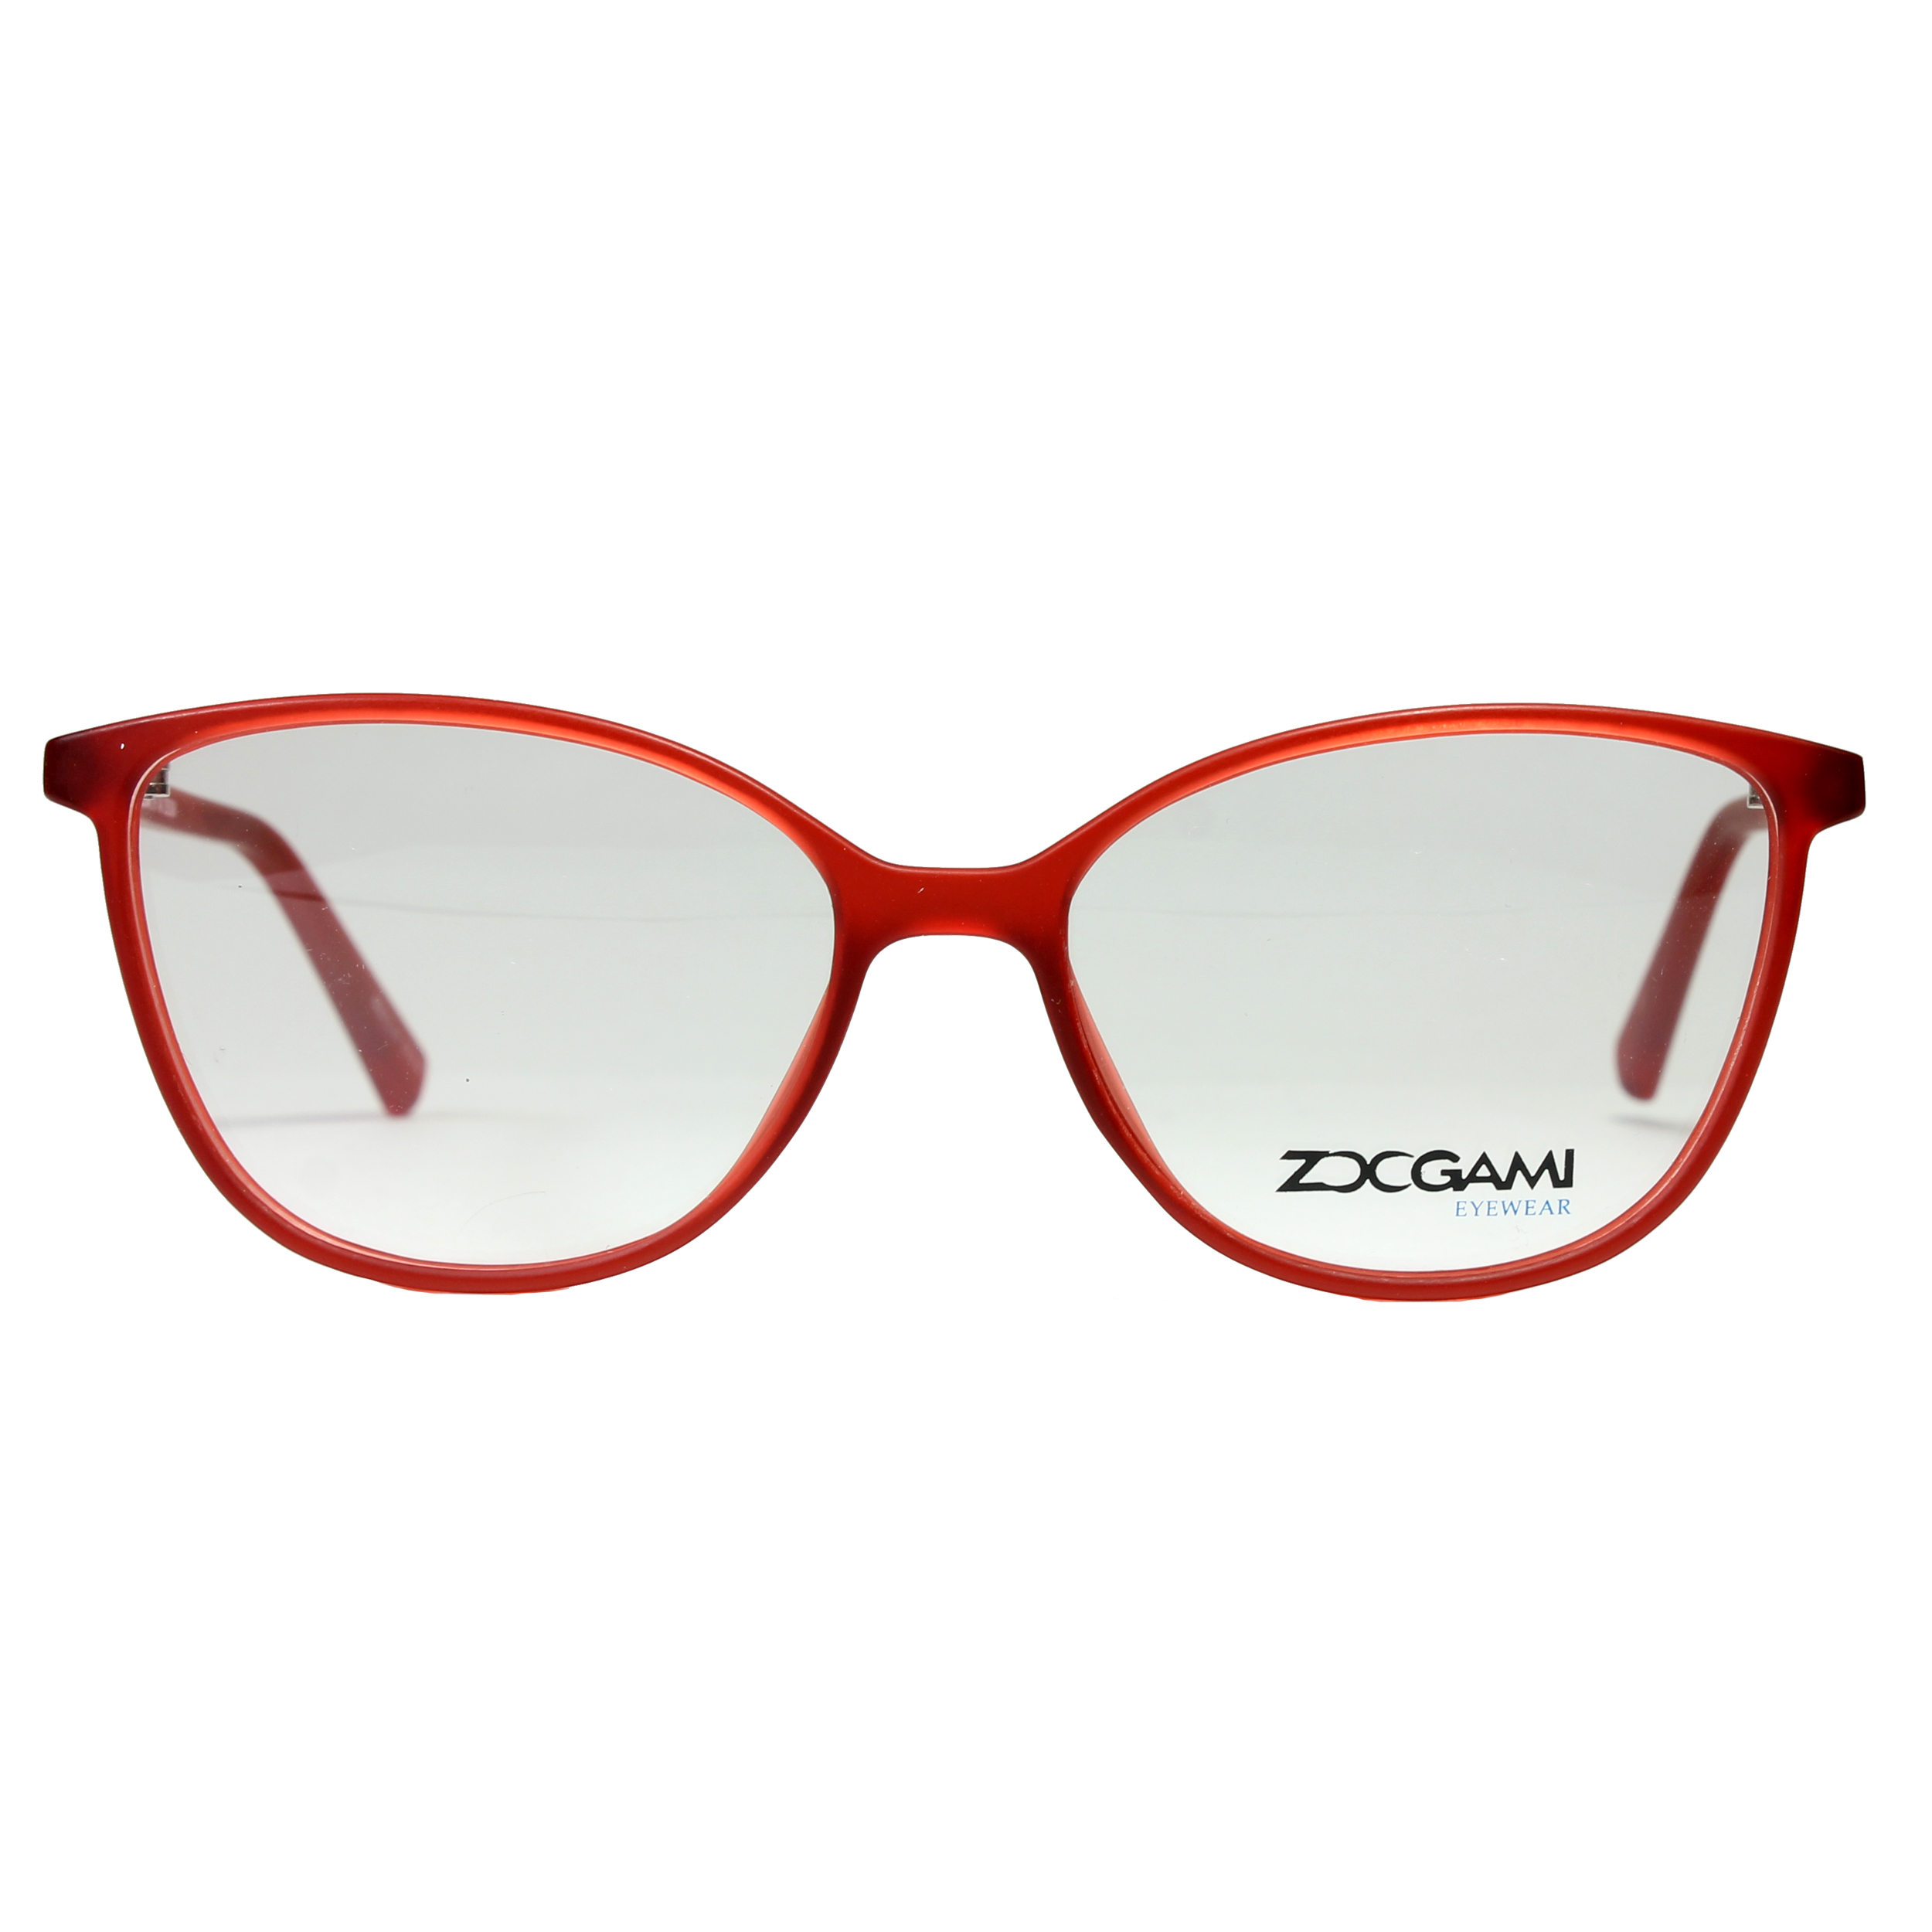 فریم عینک طبی بچگانه زوگامی مدل 1033